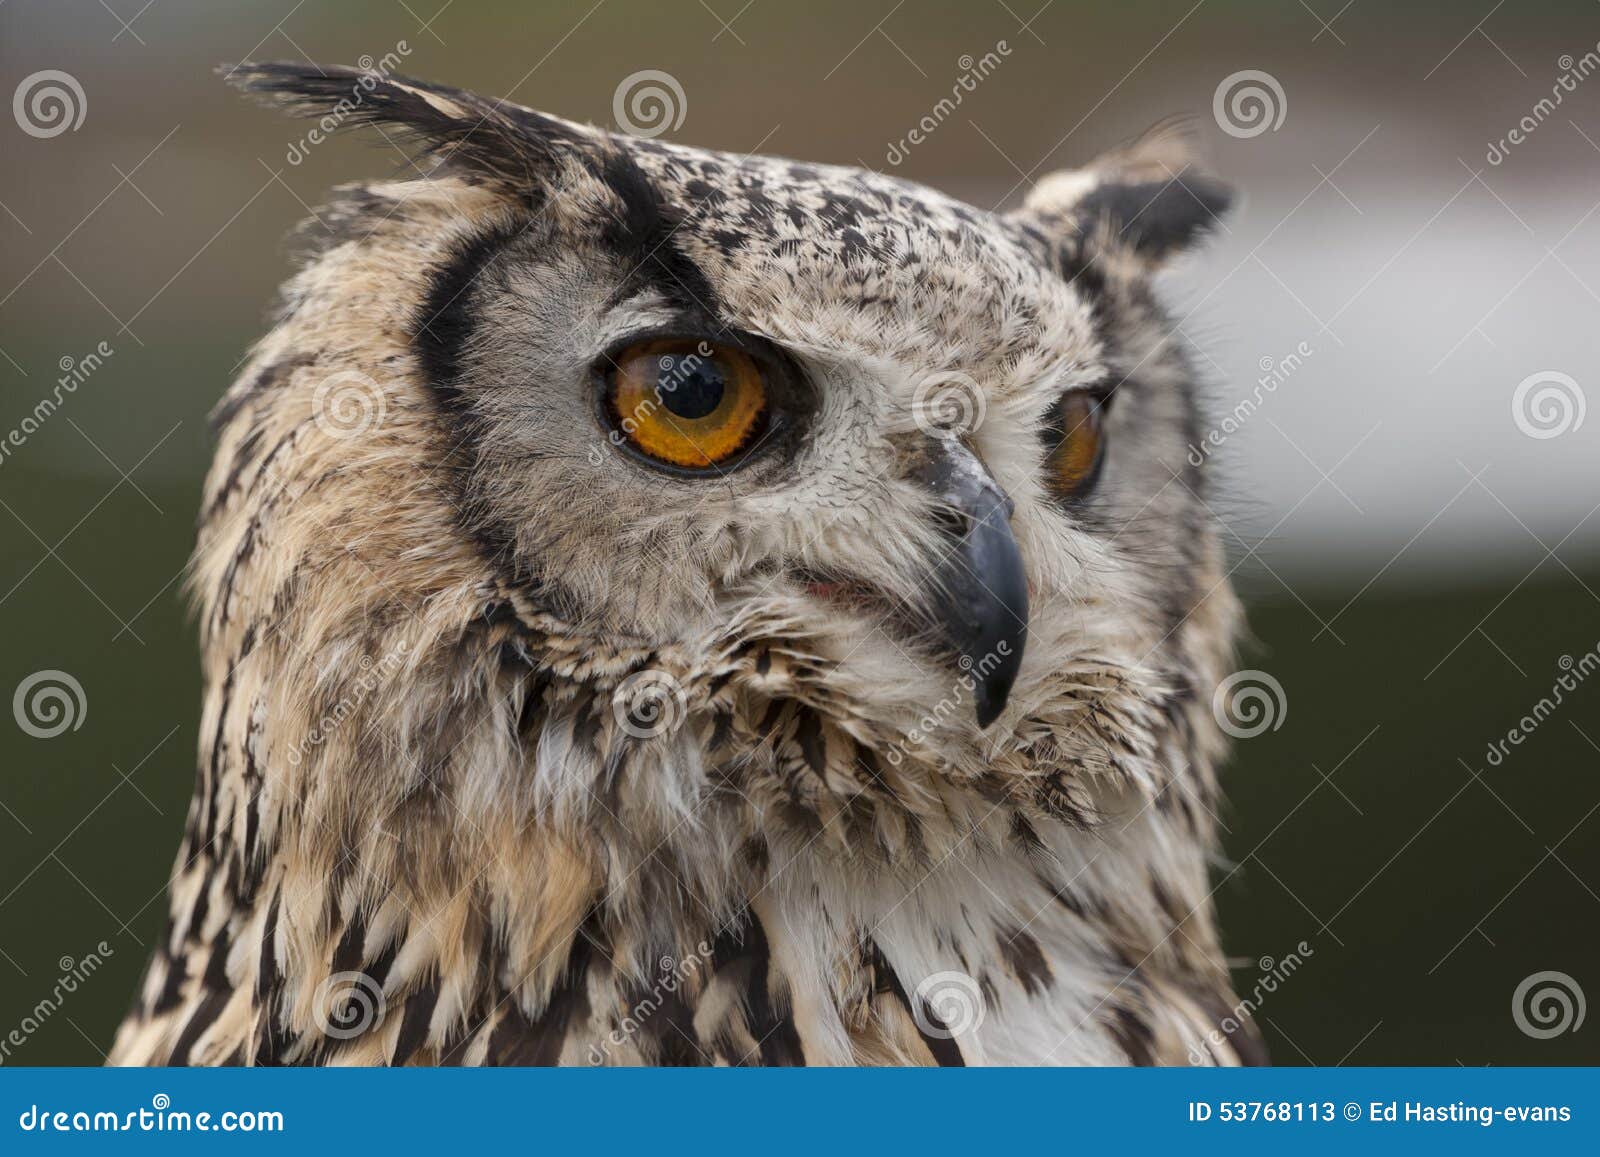 Indian Eagle Owl stock image. Image of watching, wildlife - 53768113